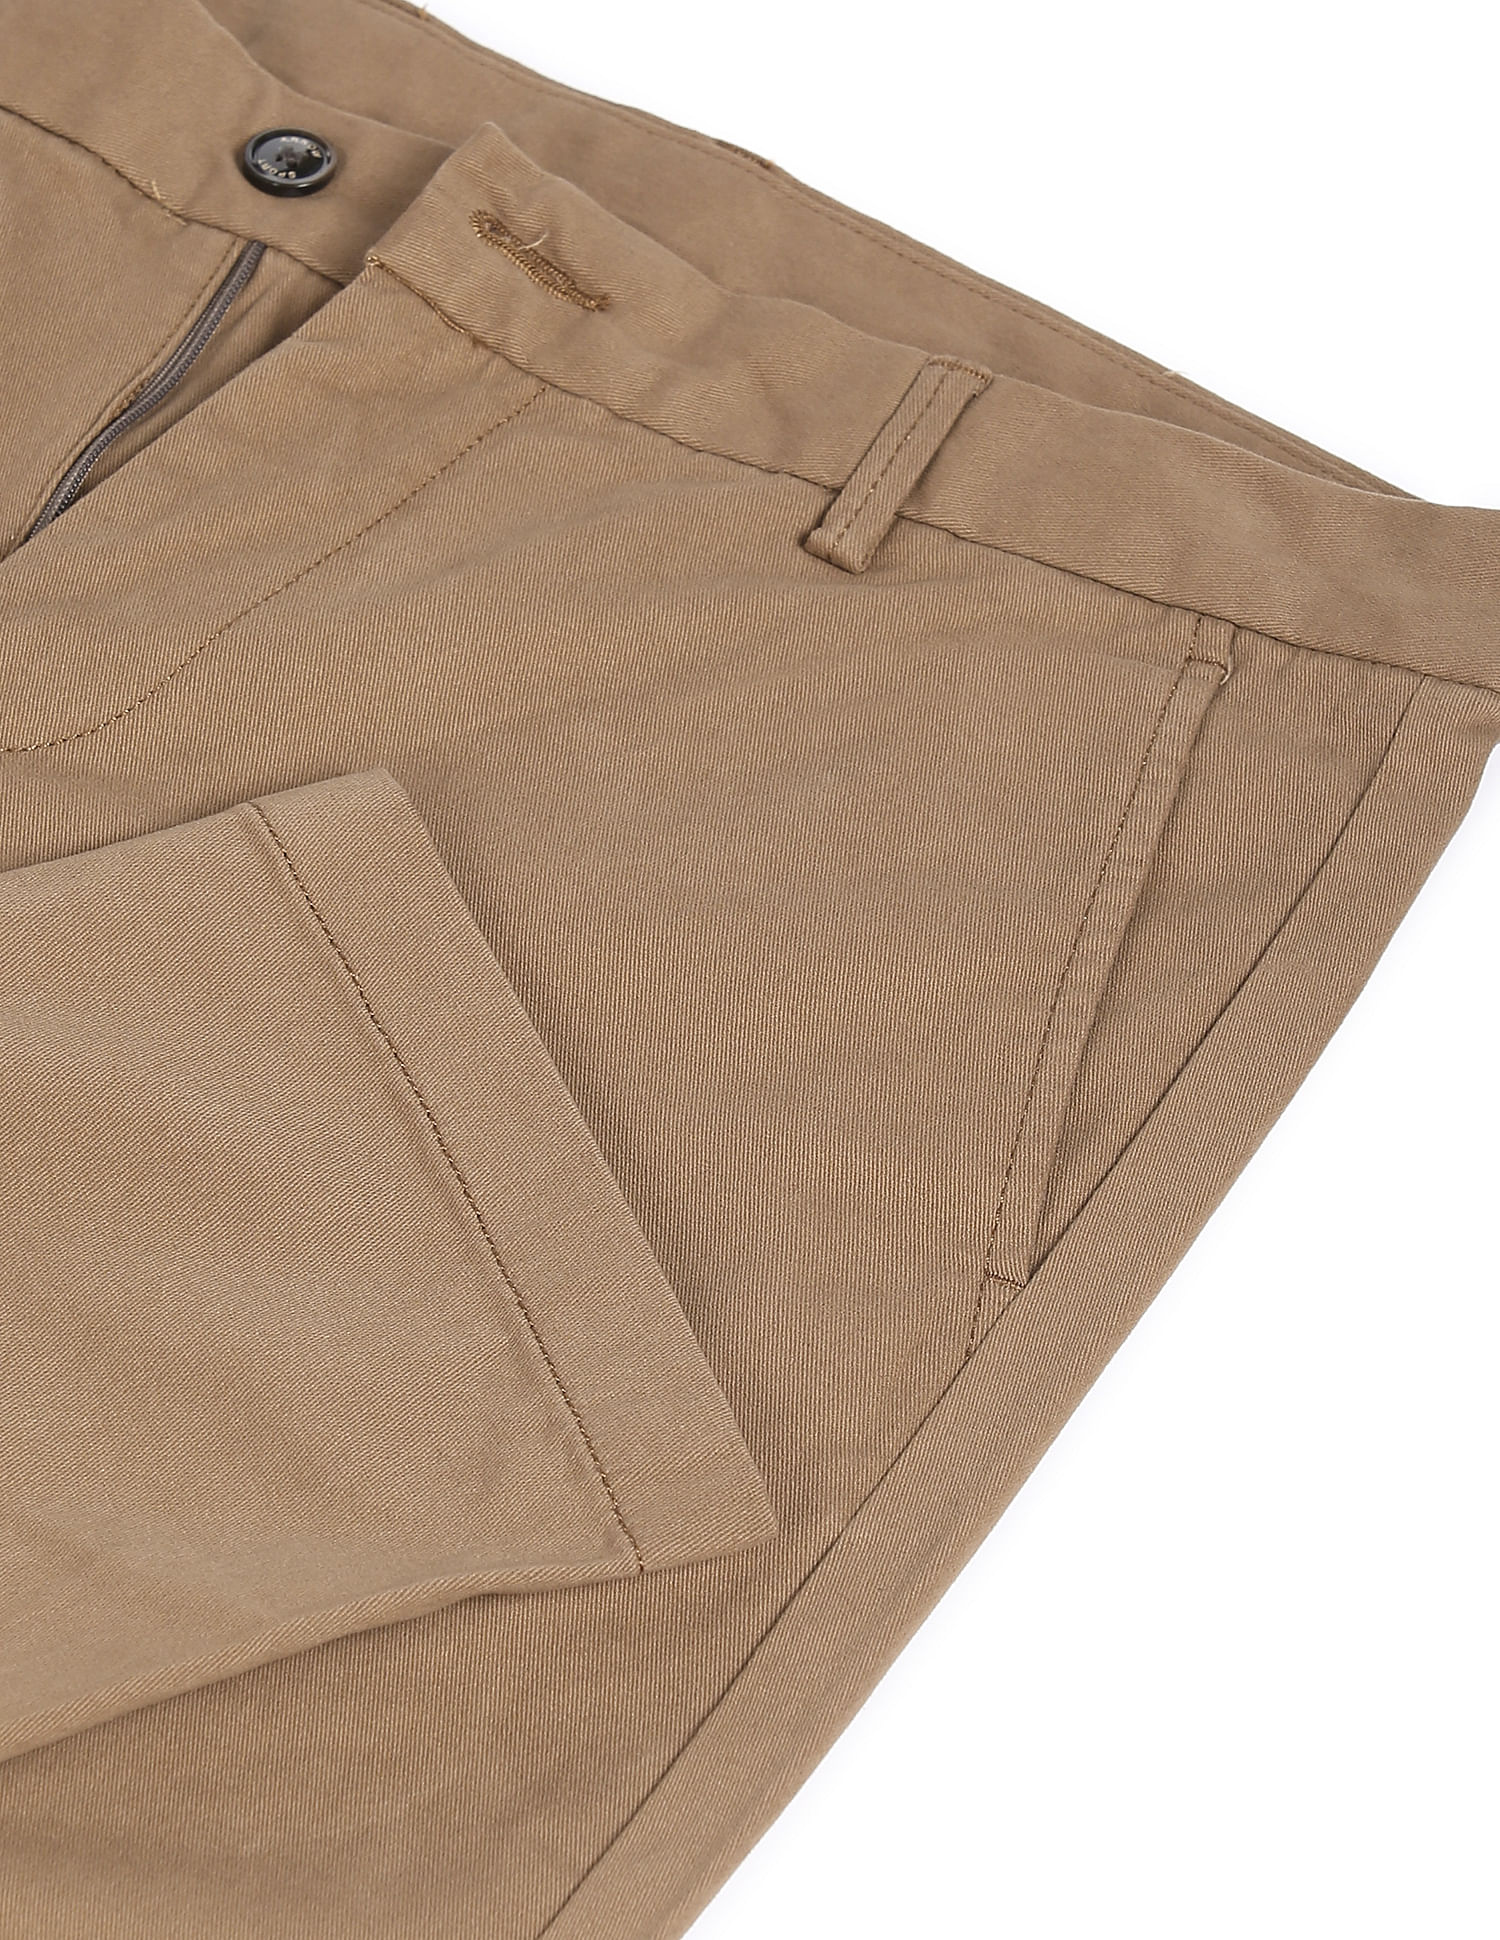 Buy Khaki Trousers  Pants for Men by Styli Online  Ajiocom